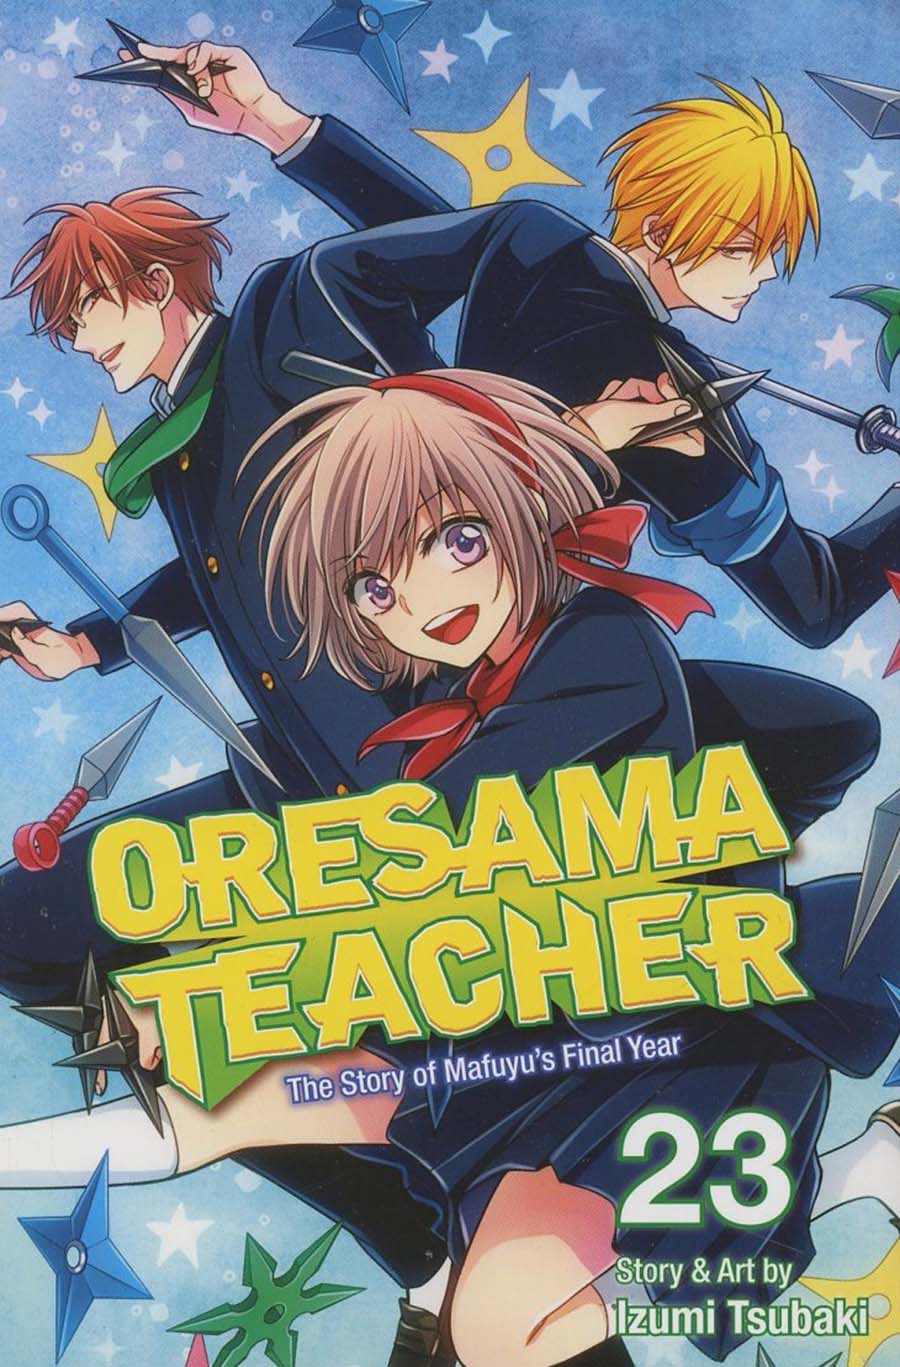 Oresama Teacher Vol 23 GN